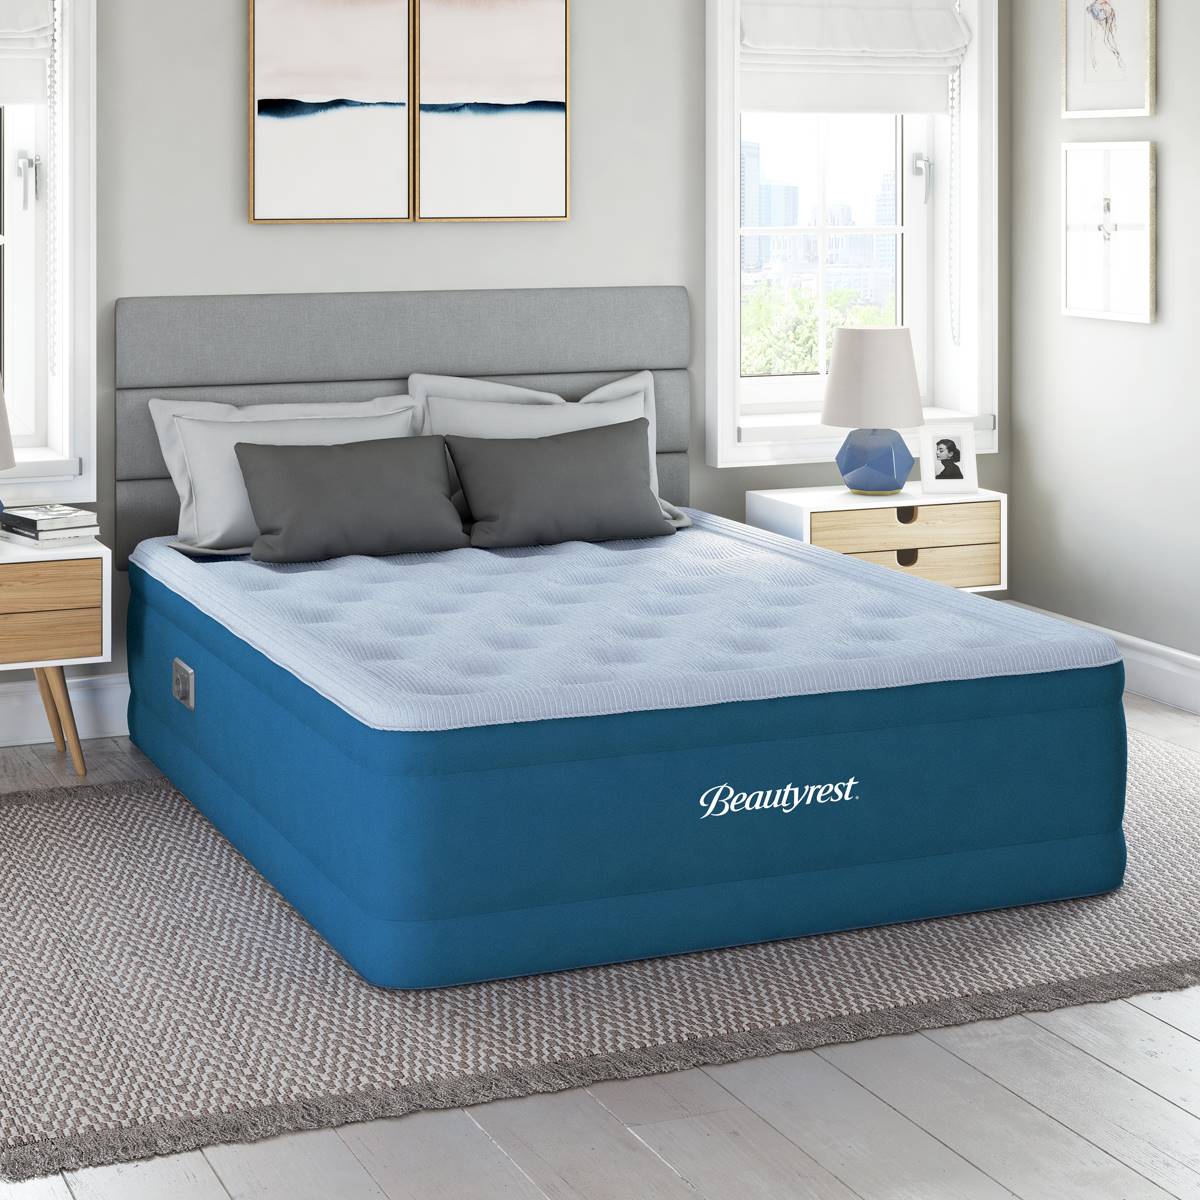 Beautyrest(R) Comfort Plus Air Bed Queen Mattress